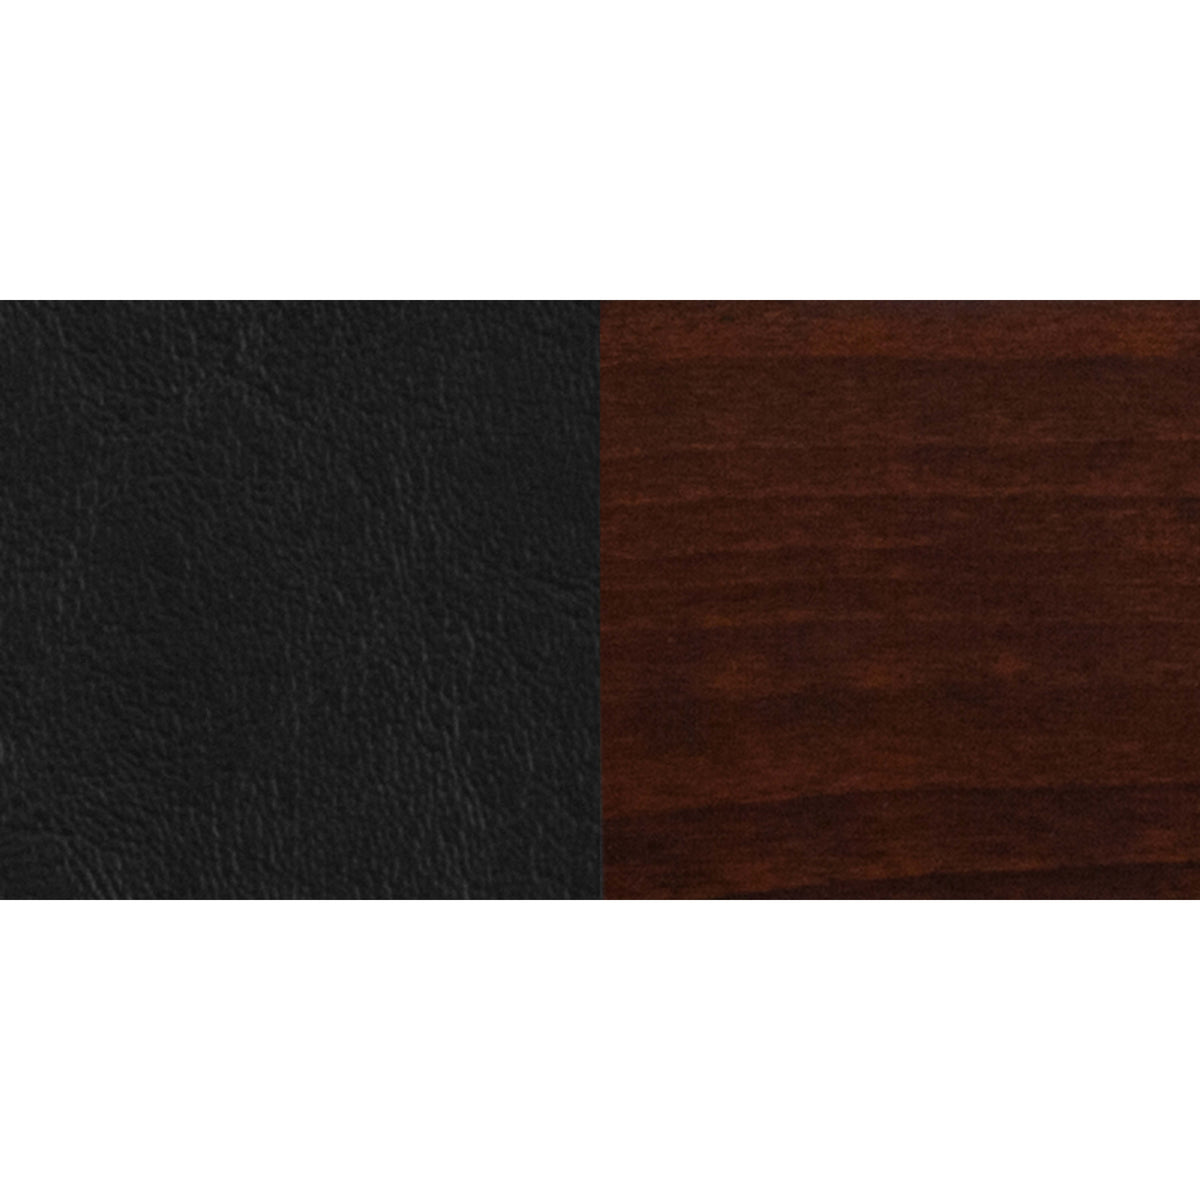 Black Vinyl Seat/Walnut Wood Frame |#| Solid Back Walnut Wood Restaurant Barstool - Black Vinyl Seat